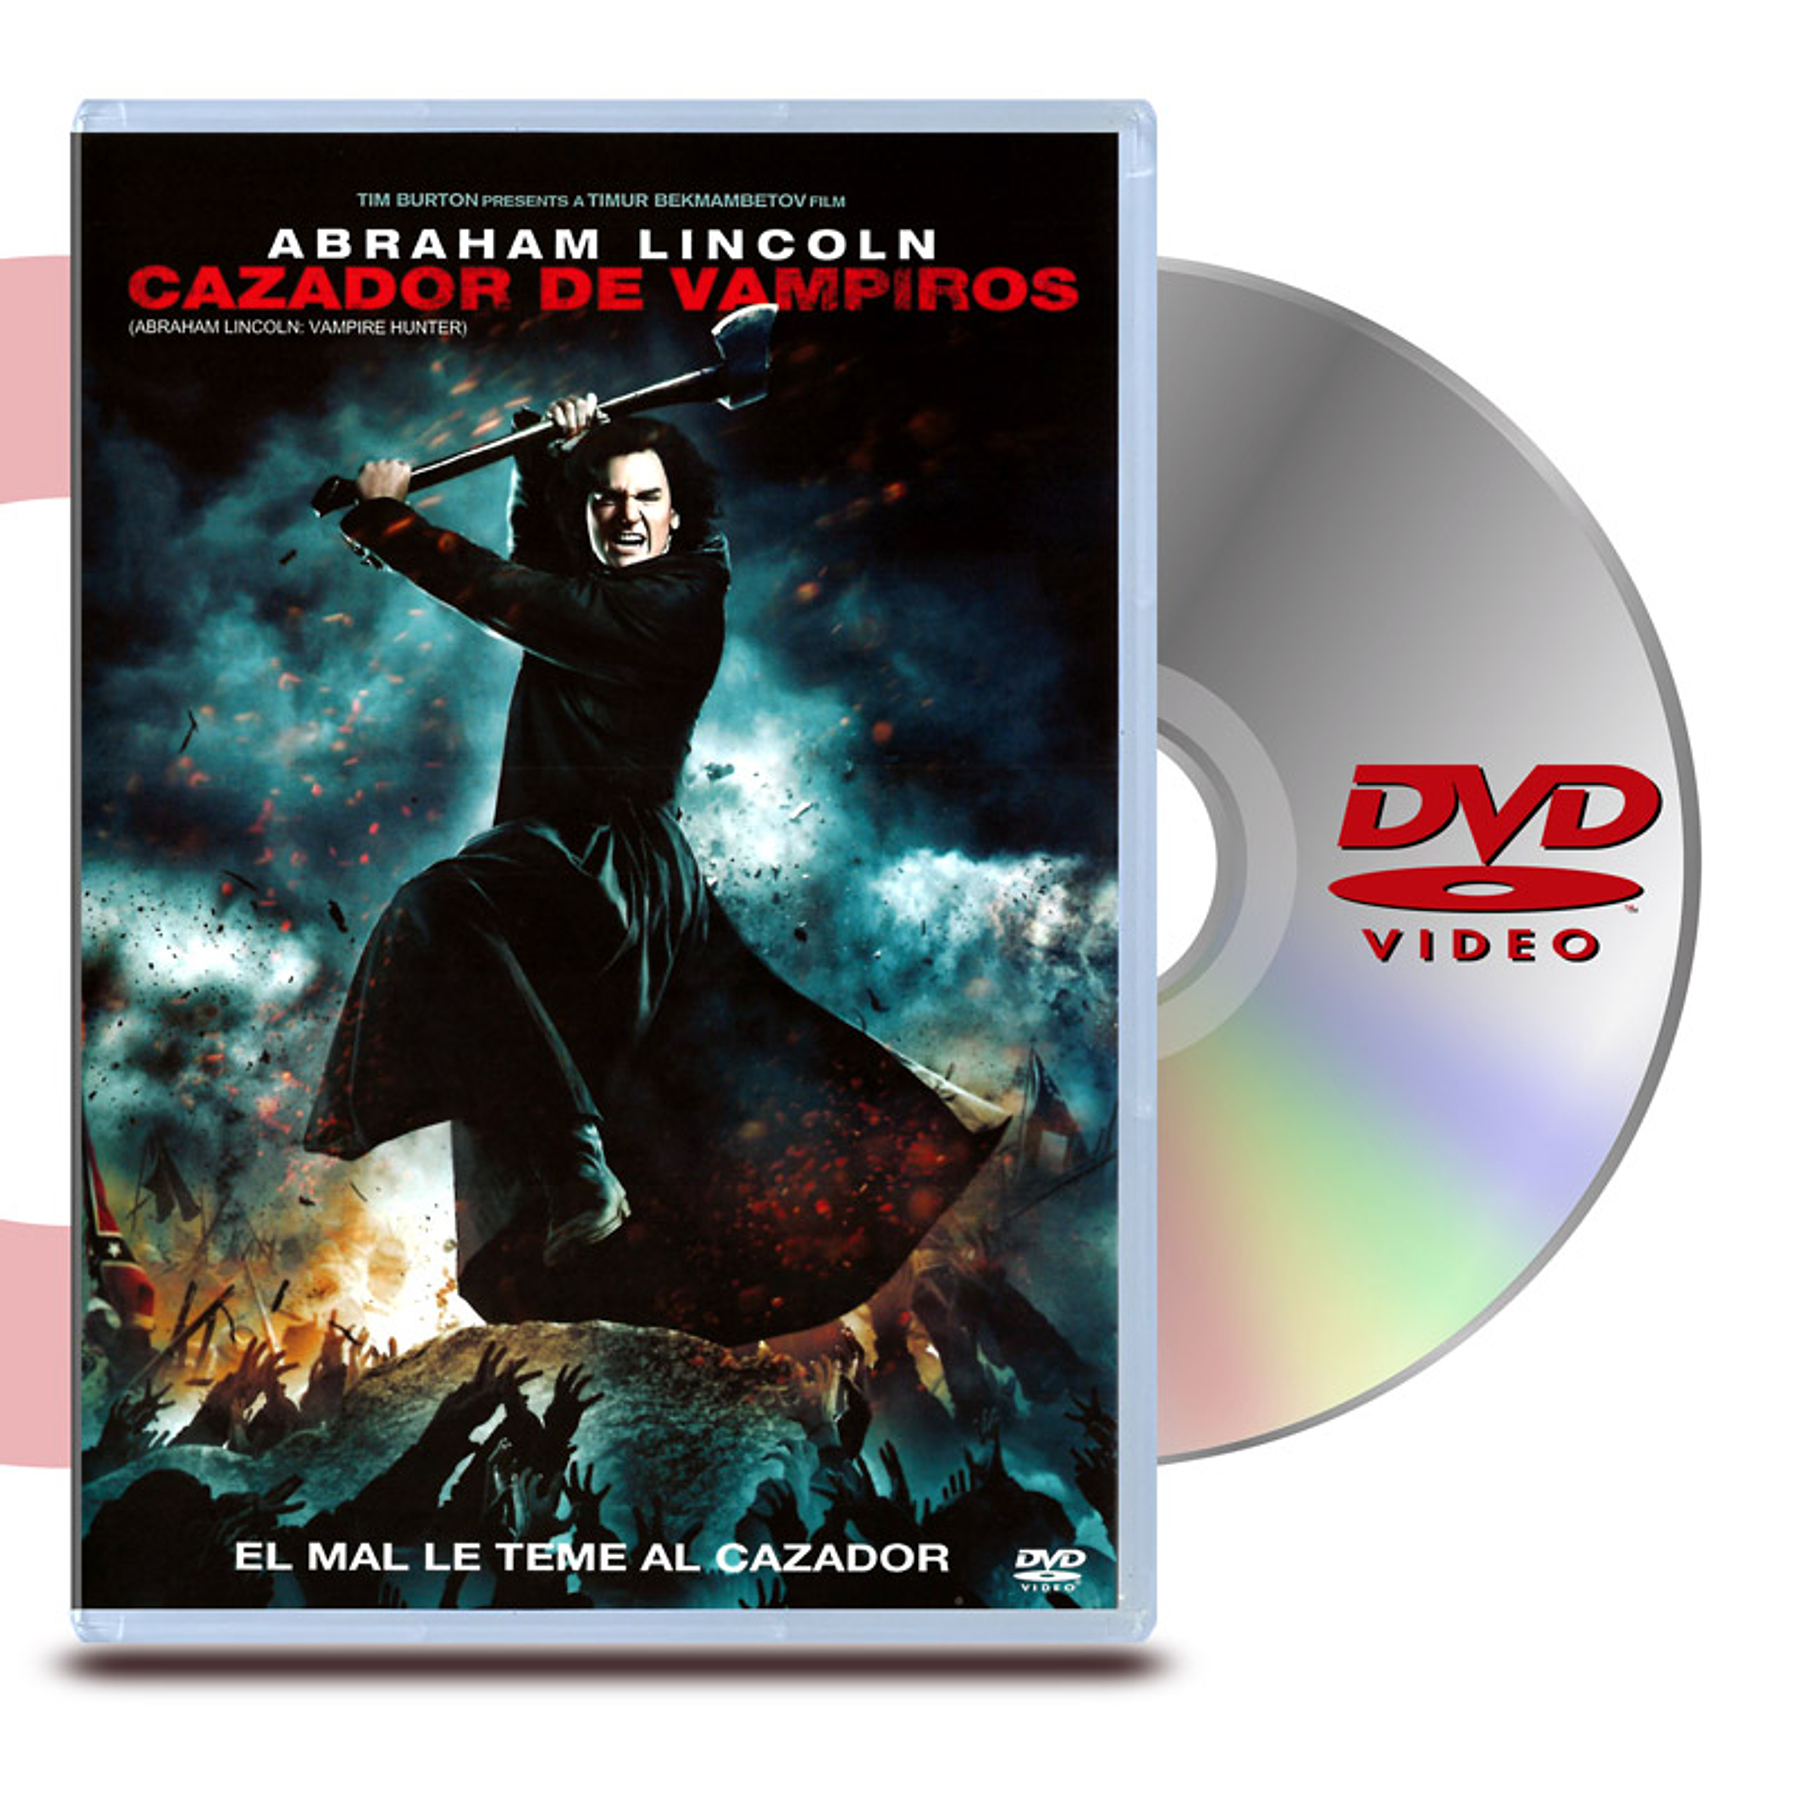 DVD ABRAHAM LINCOLN: CAZADOR DE VAMPIROS